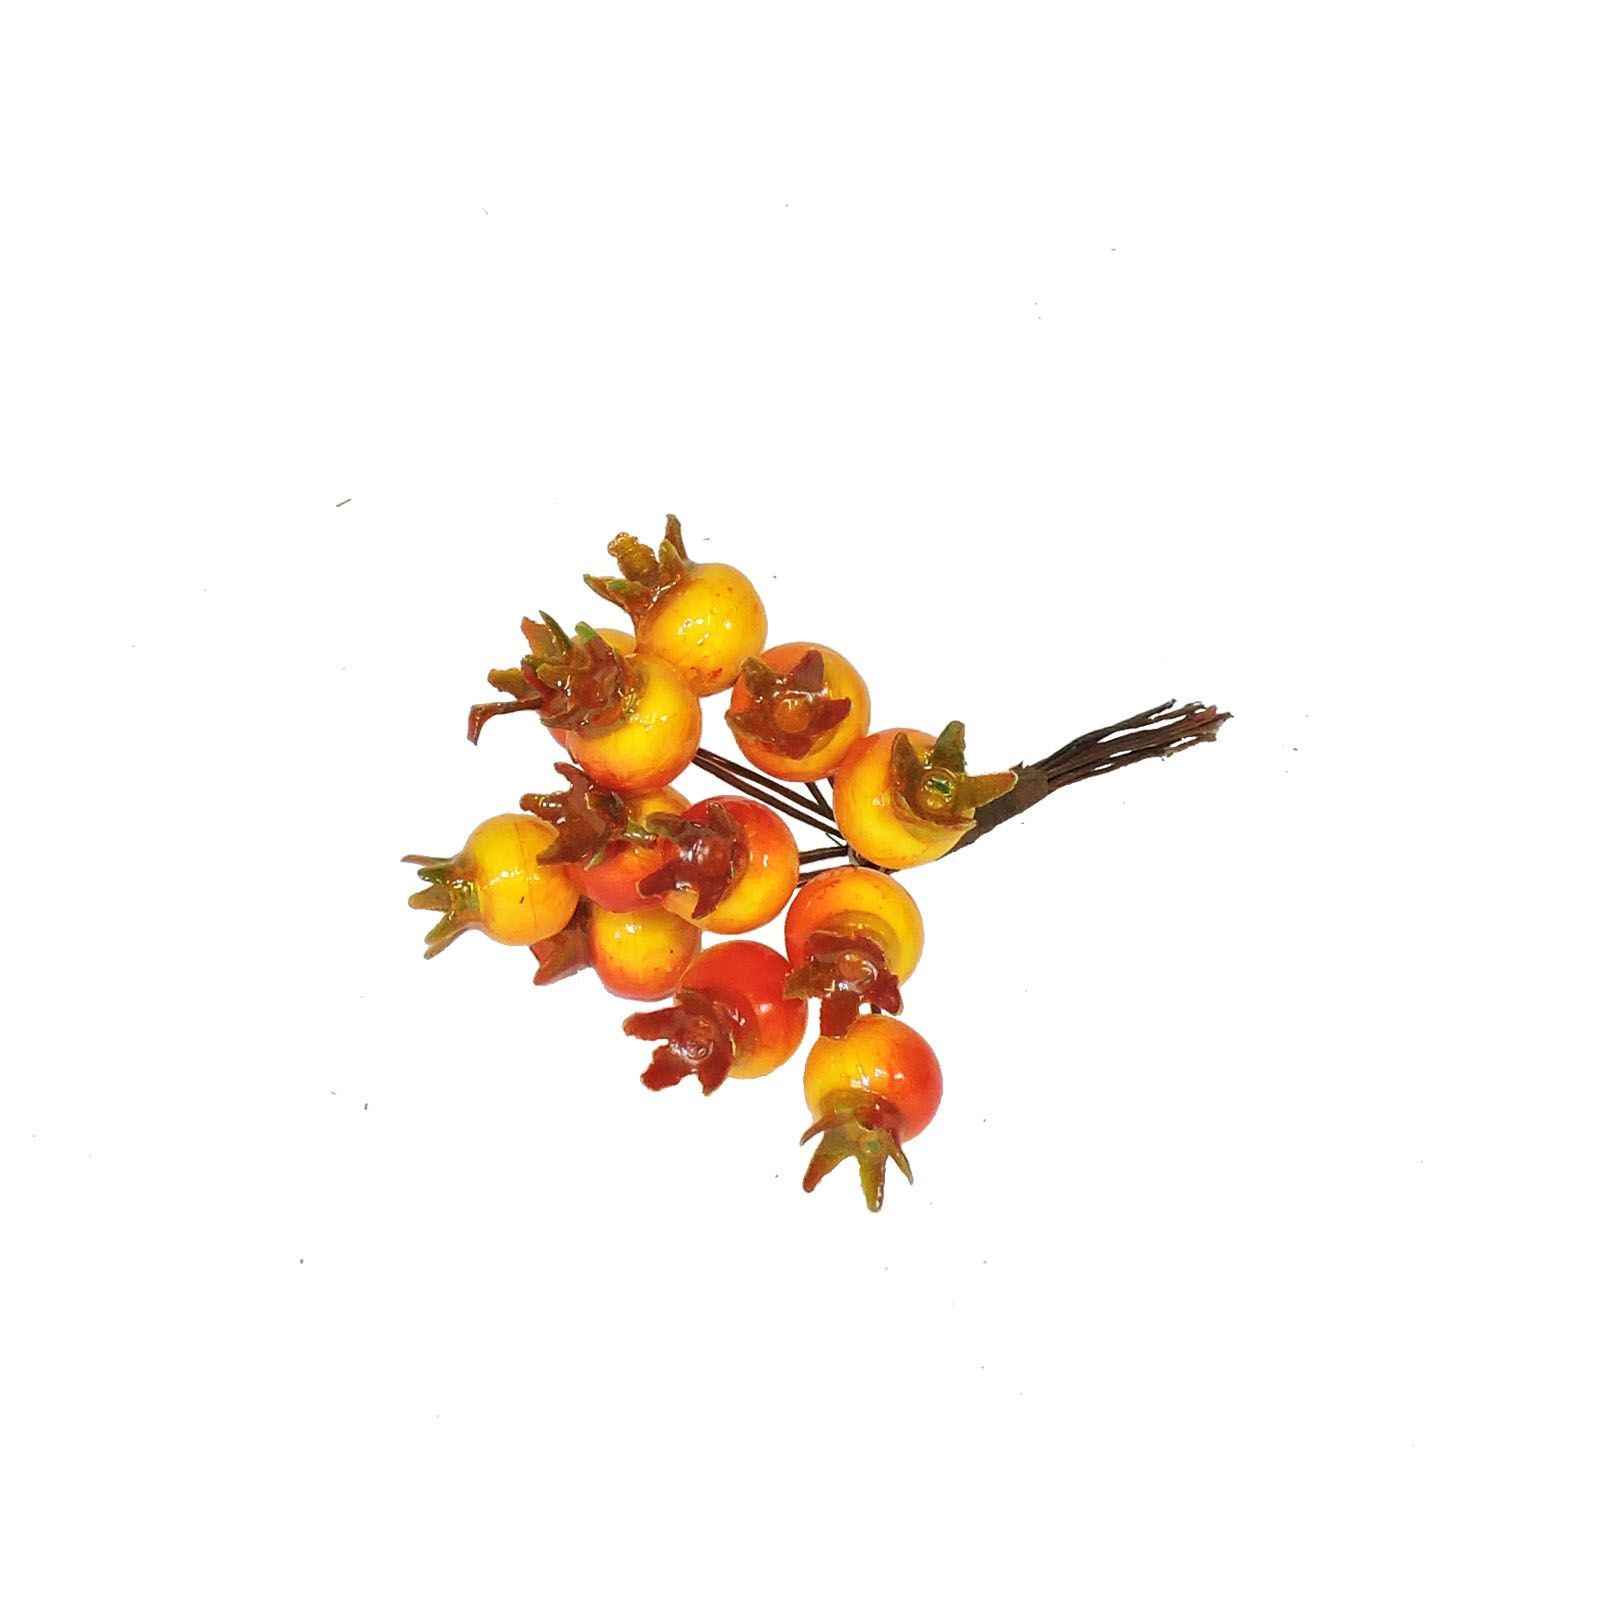 Šípky na drátku - podzimní dekorace